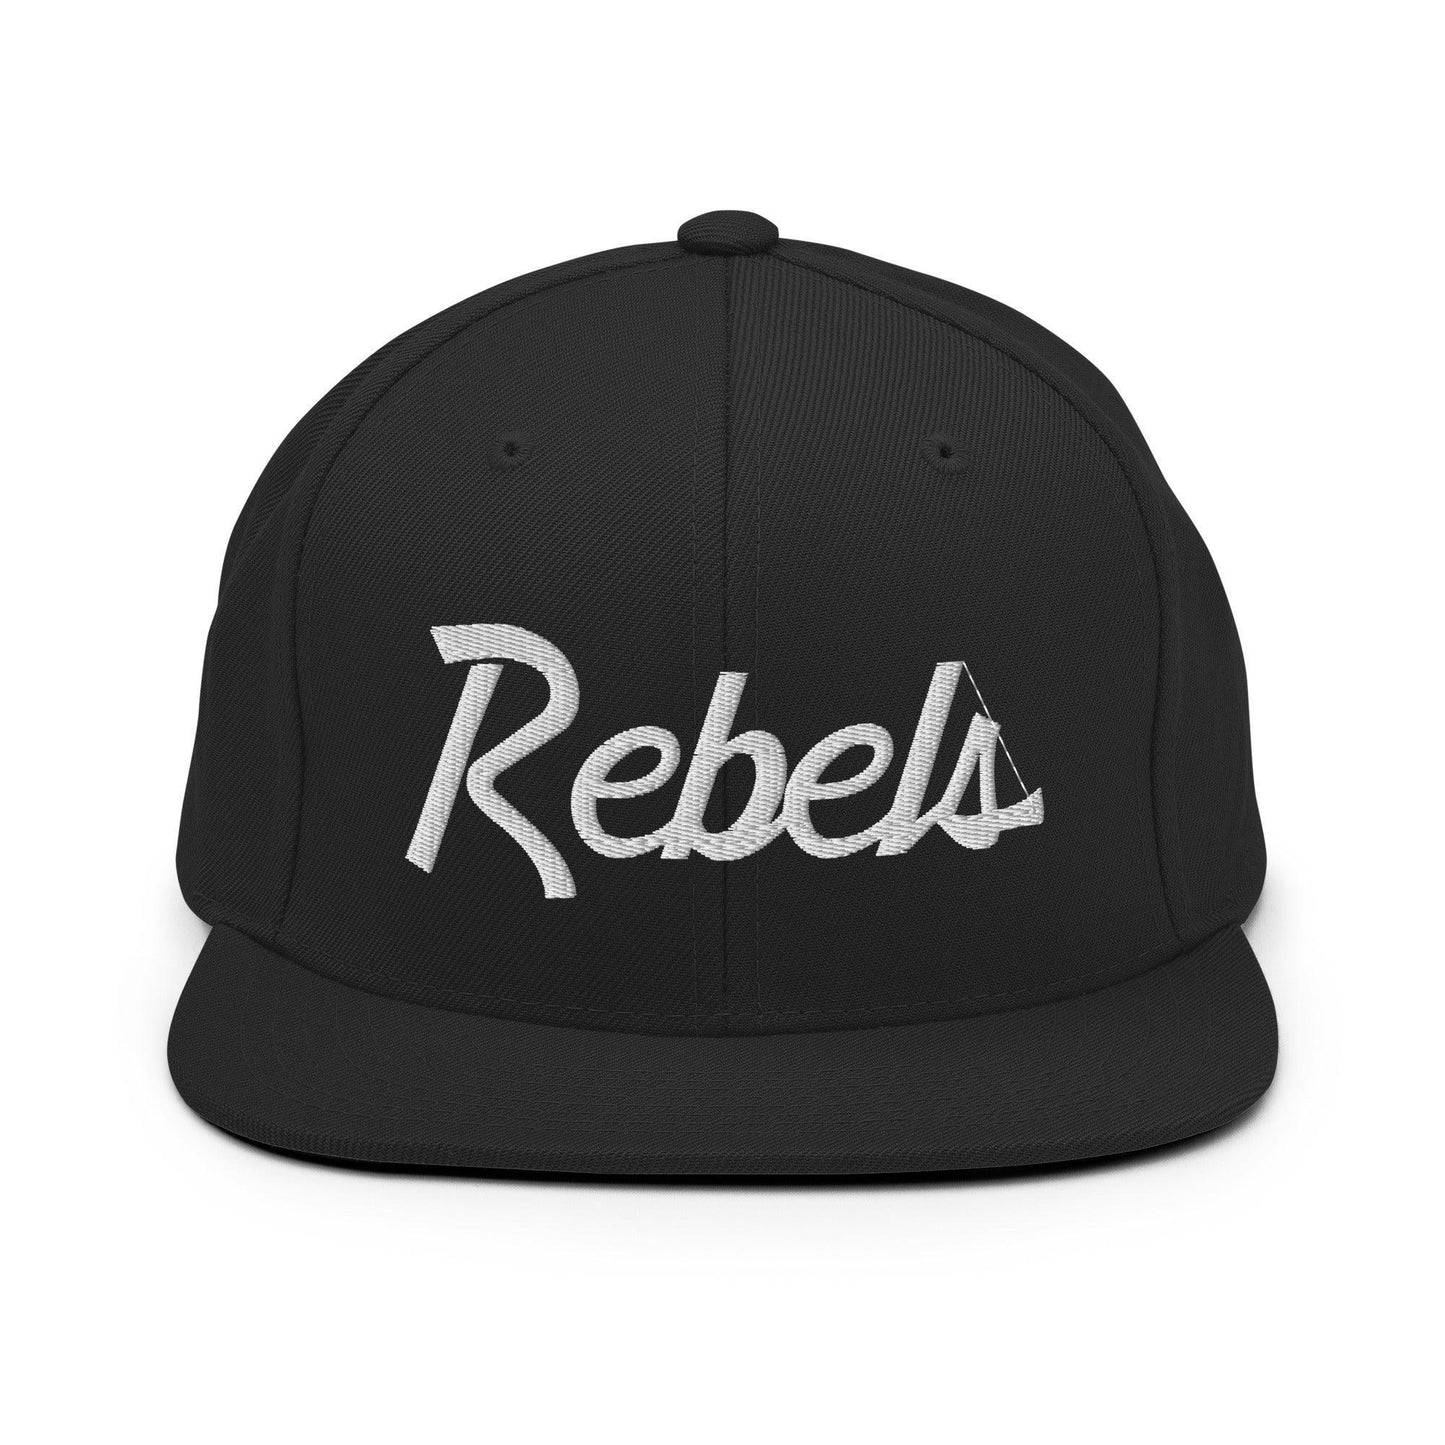 Rebels School Mascot Script Snapback Hat Black